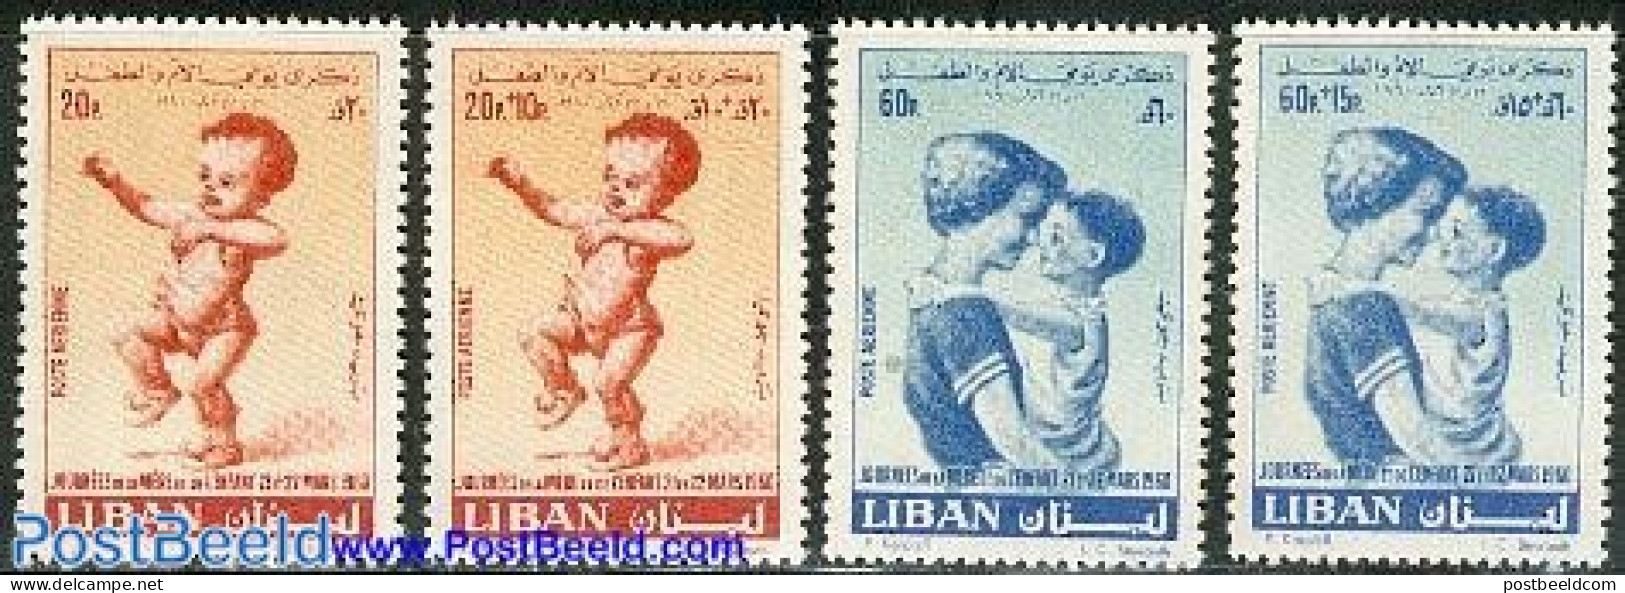 Lebanon 1960 Mother & Child 4v, Mint NH - Lebanon